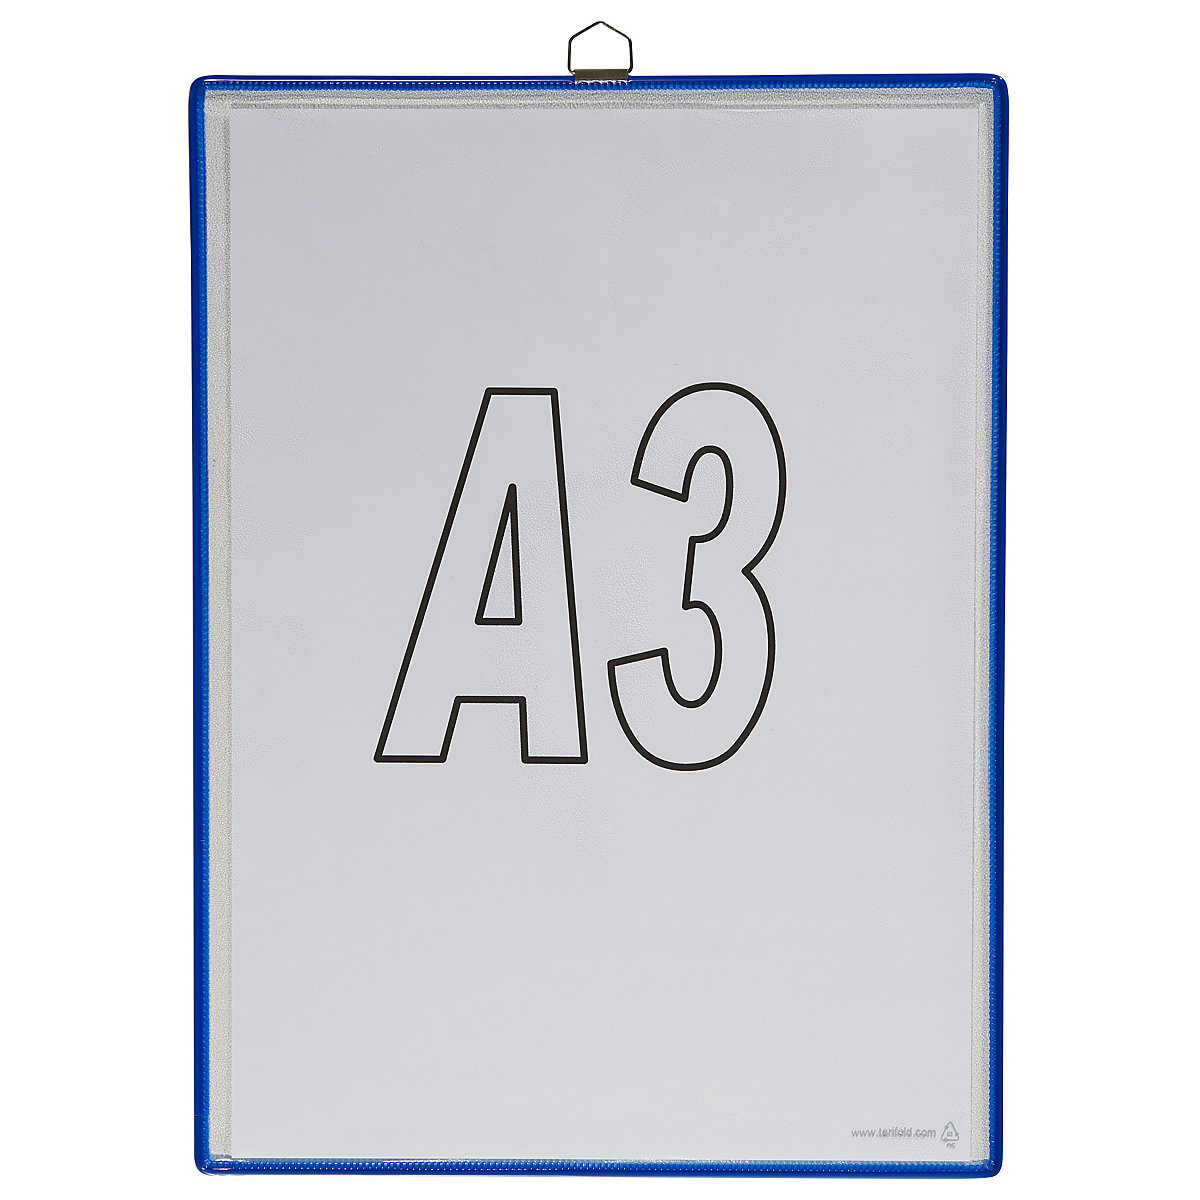 Pochette transparente à accrocher – Tarifold, pour format A3, coloris bleu, lot de 10-7